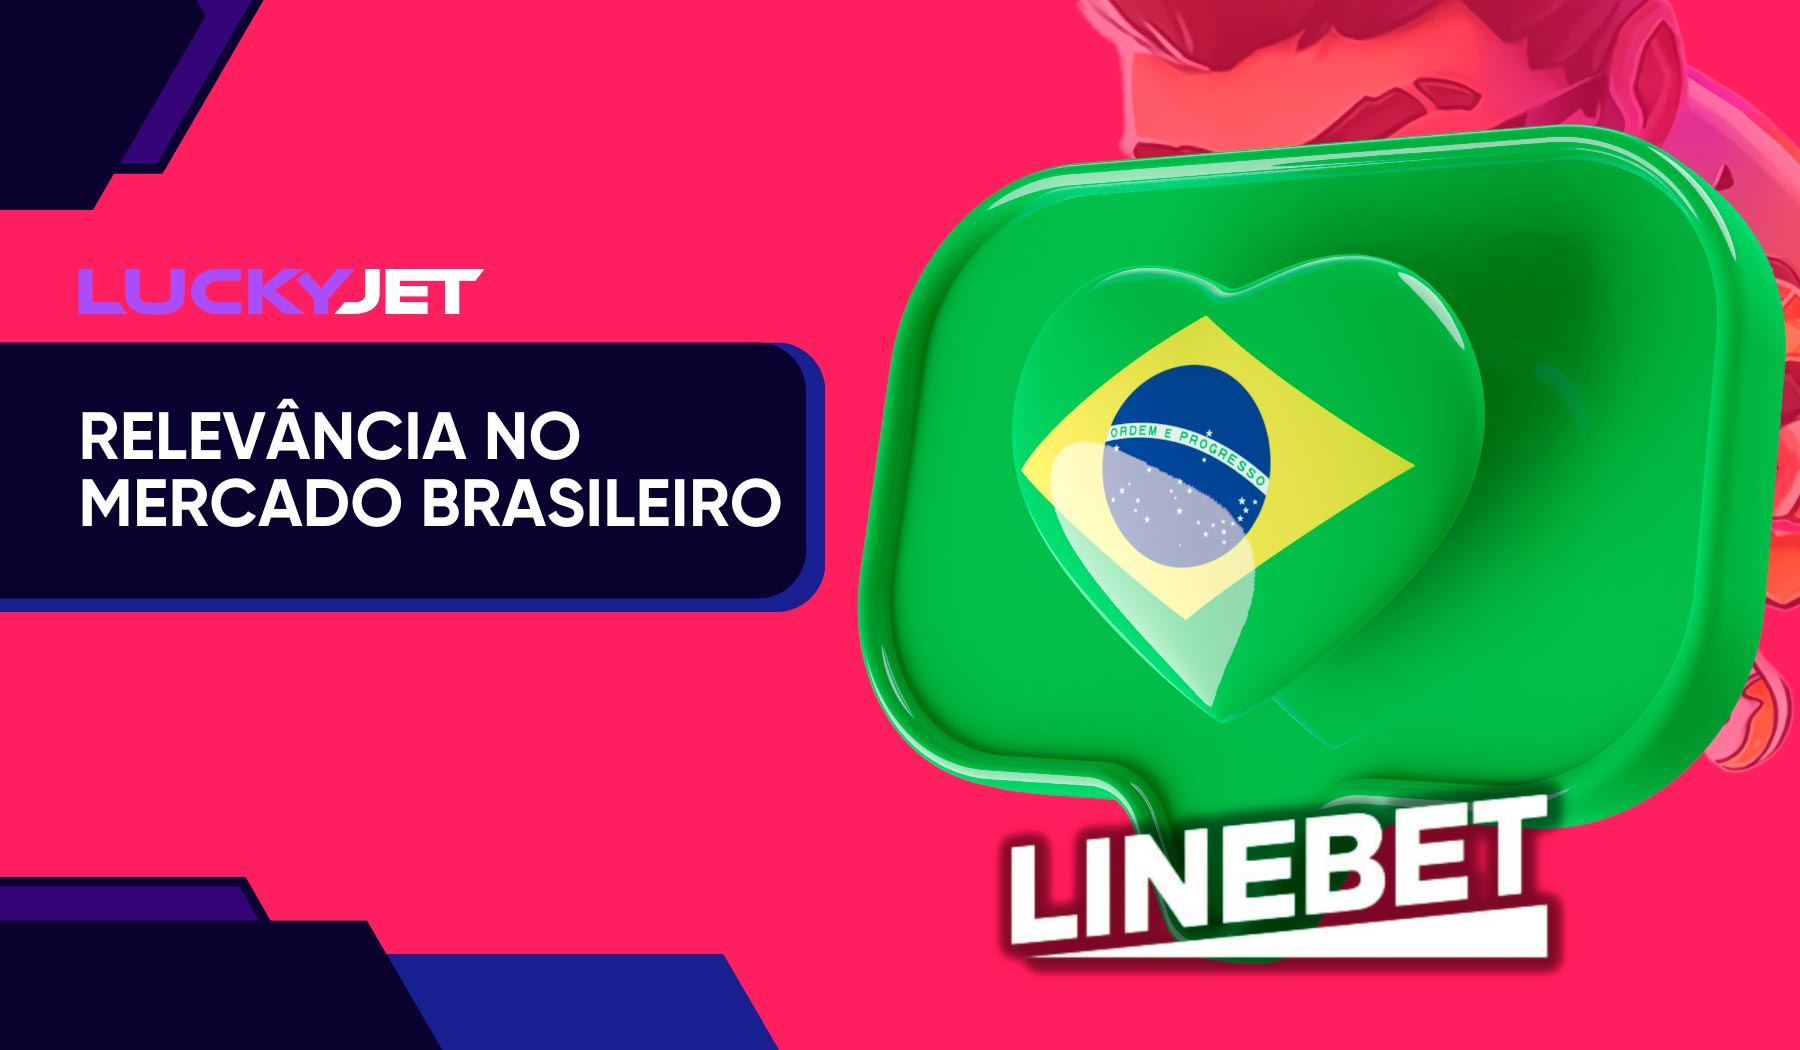 Linebet Jet Parimatch no mercado brasileiro